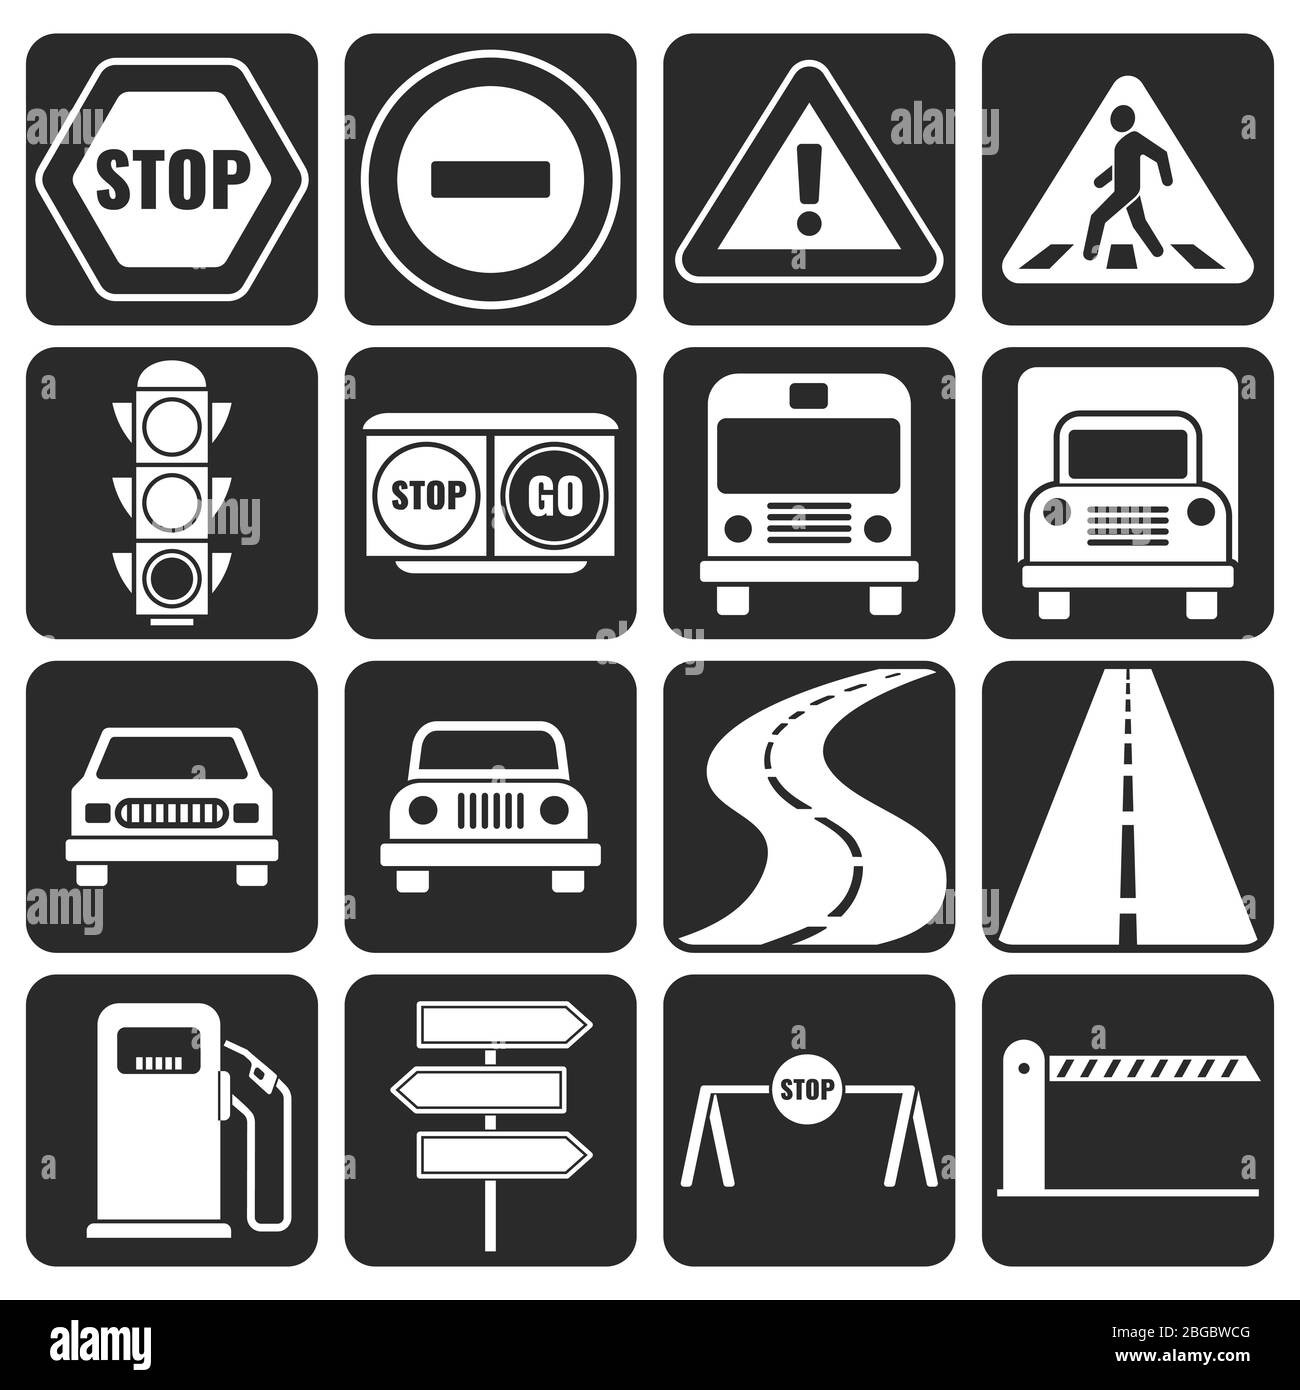 Icone del vettore di direzione e del traffico impostate. Segnaletica stradale per percorso e strada, segnaletica stradale in bianco e nero Illustrazione Vettoriale